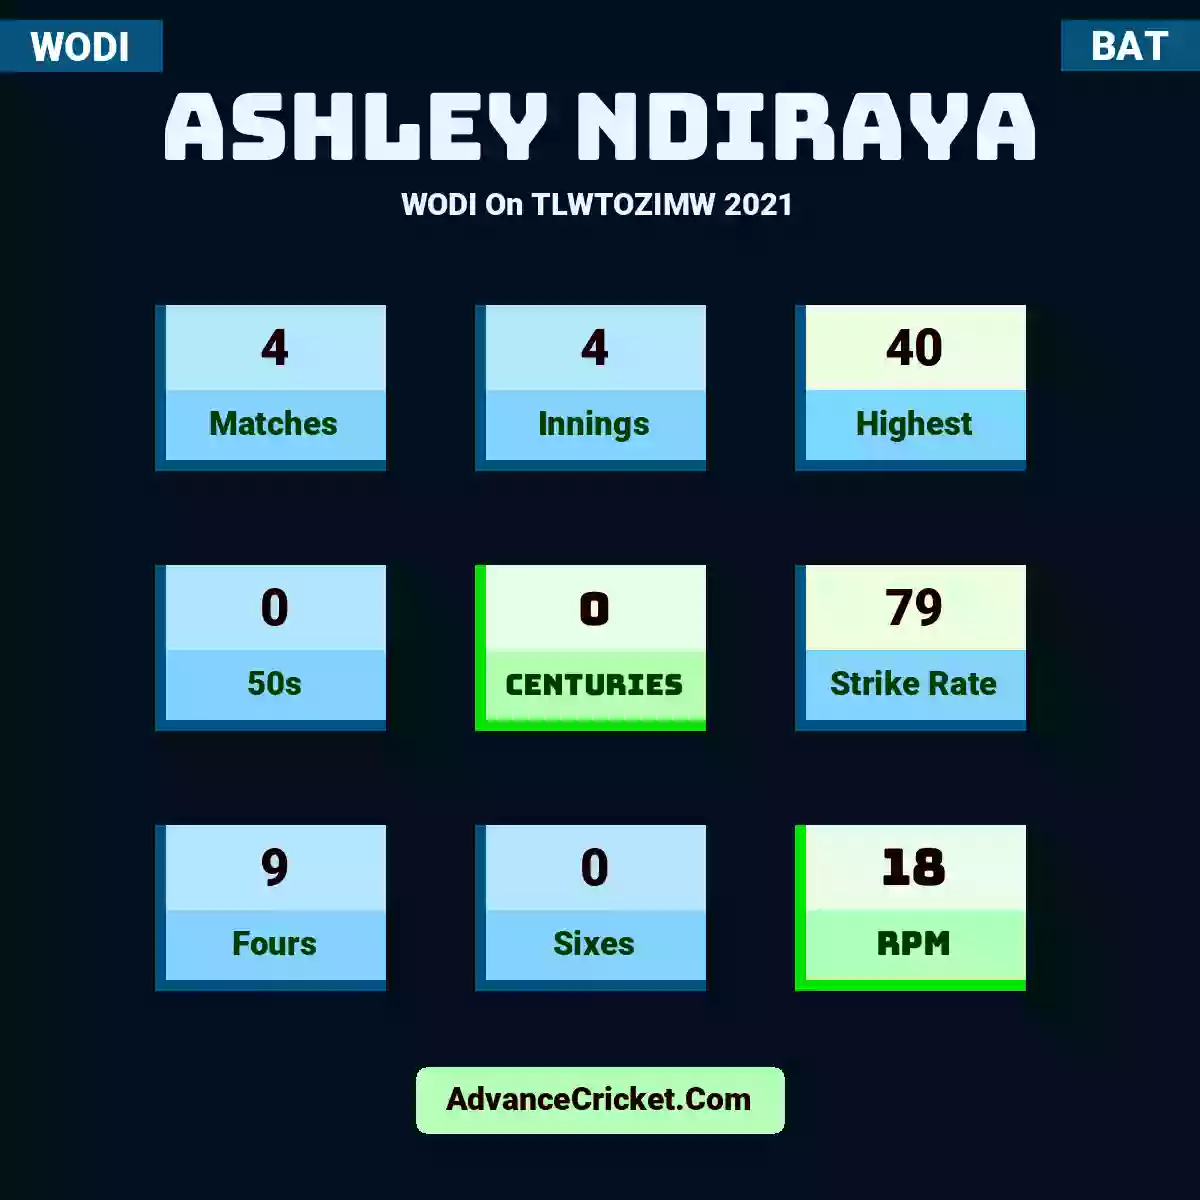 Ashley Ndiraya WODI  On TLWTOZIMW 2021, Ashley Ndiraya played 4 matches, scored 40 runs as highest, 0 half-centuries, and 0 centuries, with a strike rate of 79. A.Ndiraya hit 9 fours and 0 sixes, with an RPM of 18.